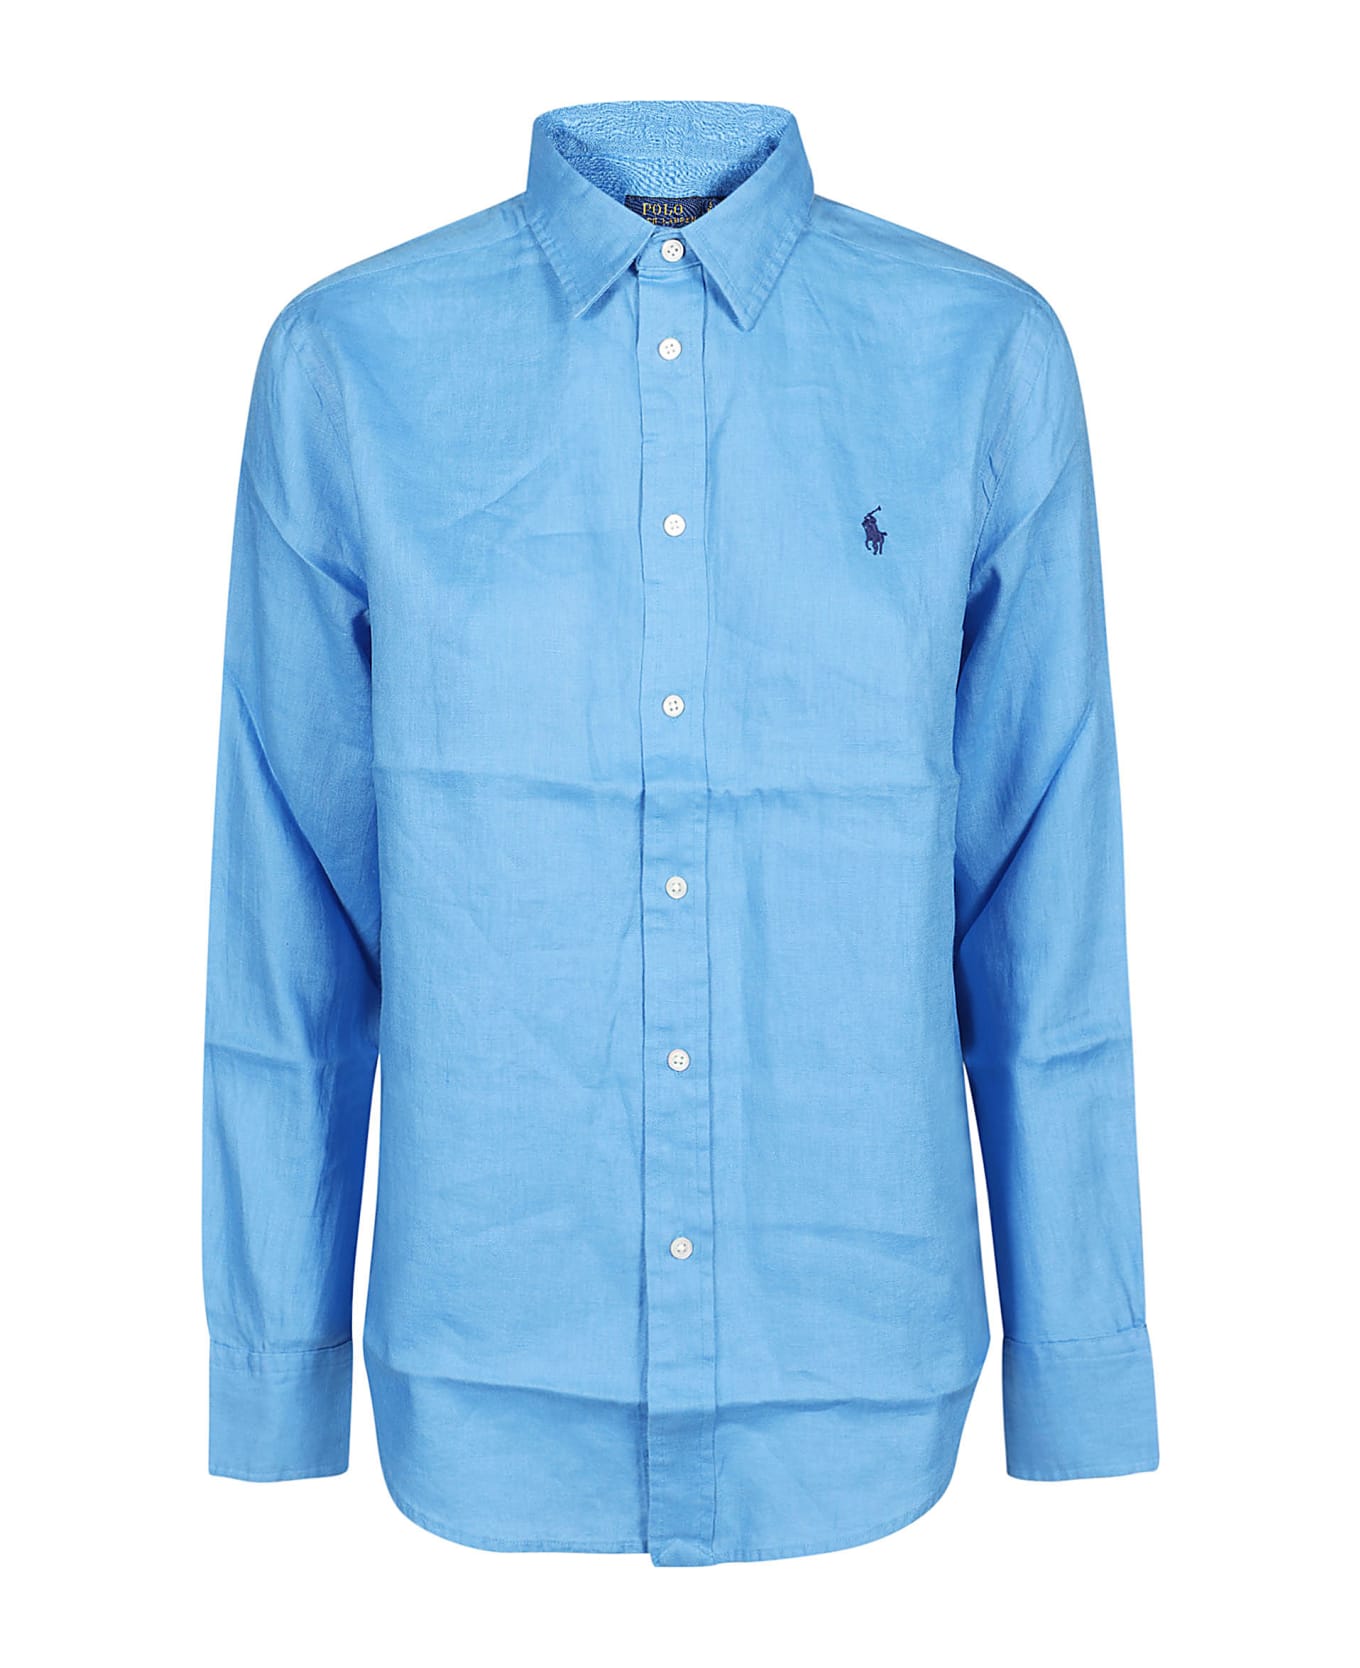 Polo Ralph Lauren Long Sleeve Button Front Shirt - Riviera Blue